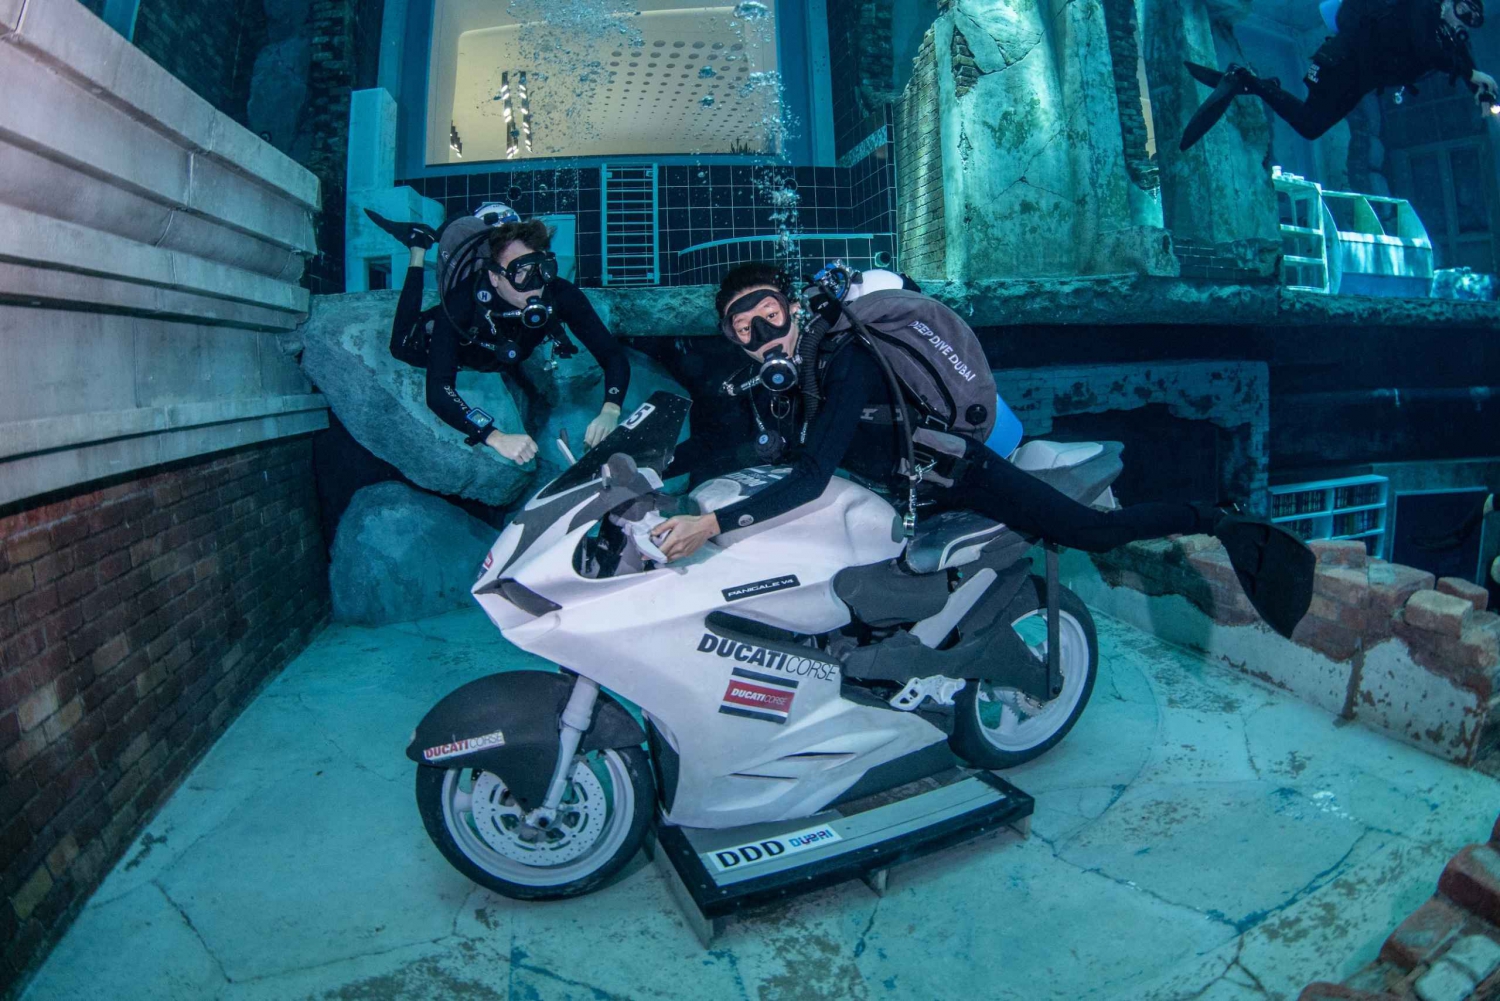 Dubai: Upptäck dykning för nybörjare på Deep Dive